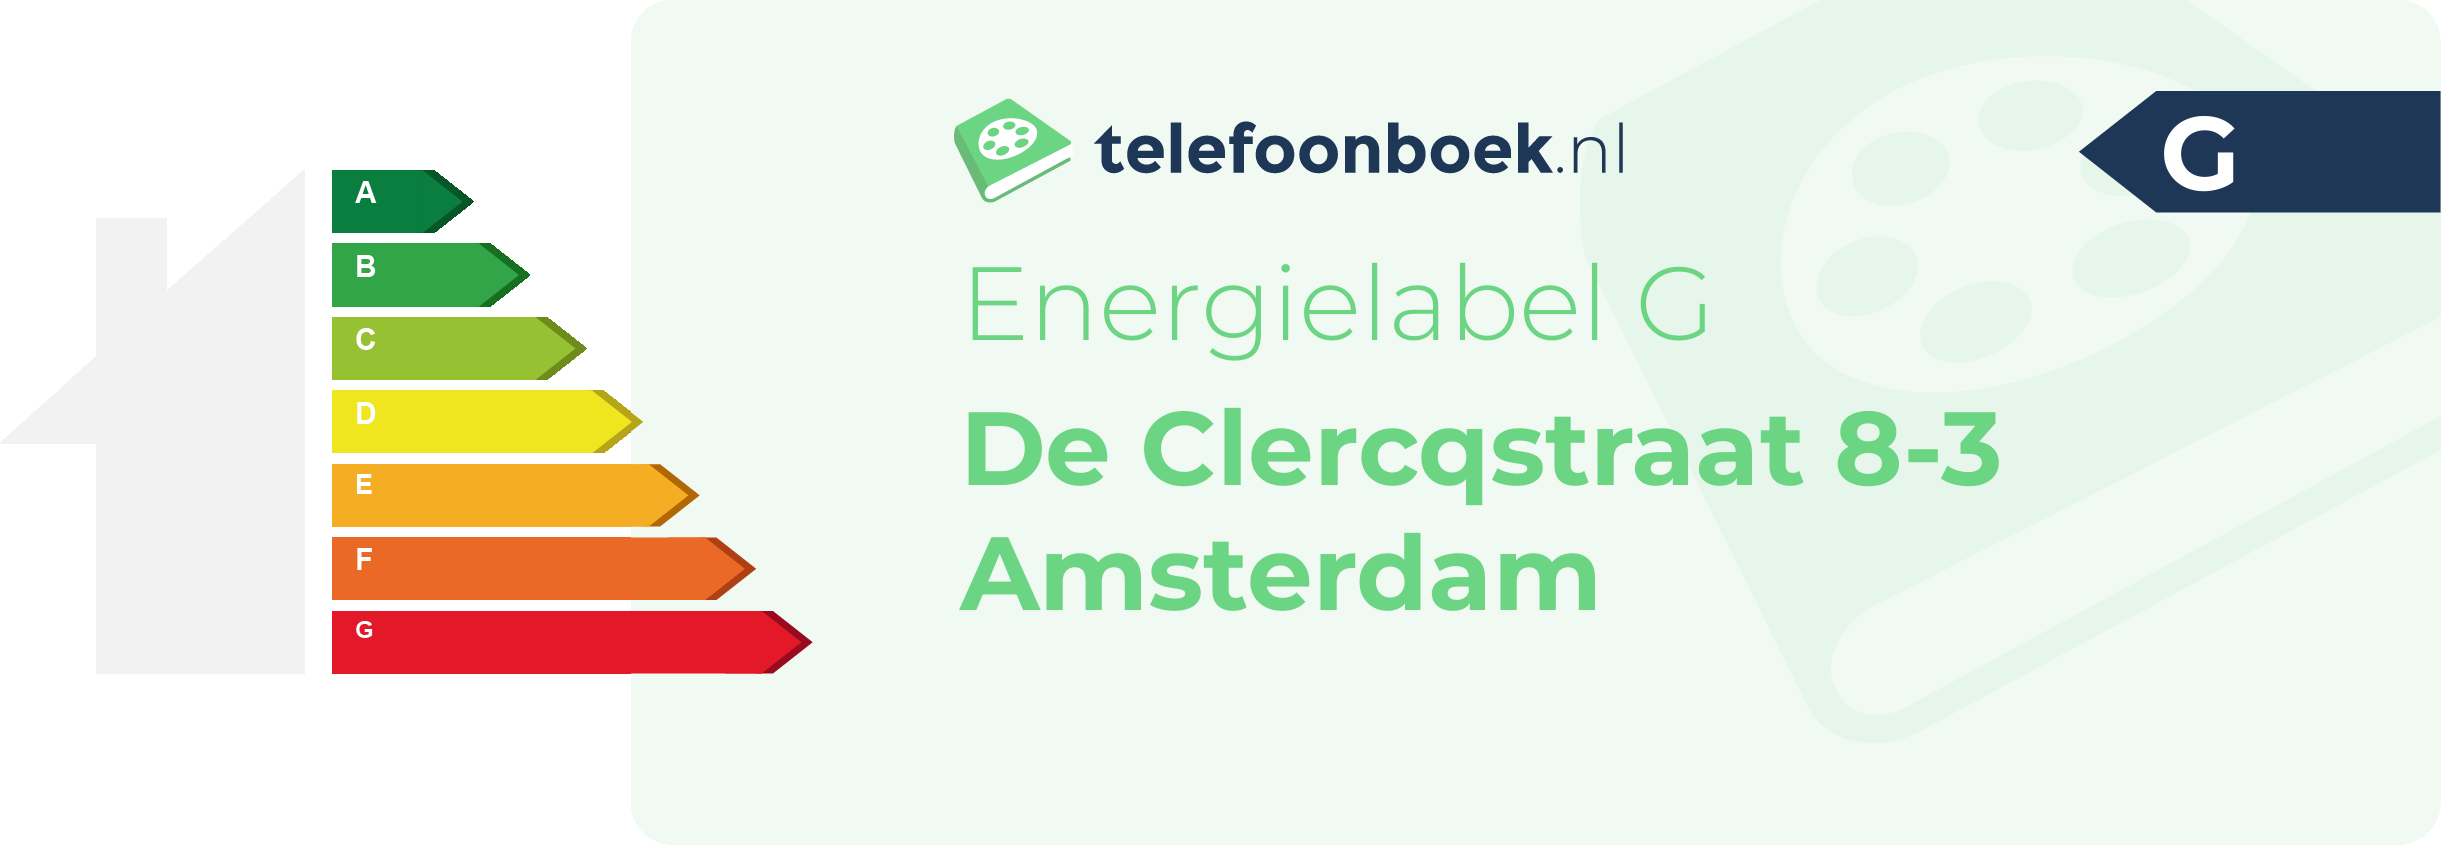 Energielabel De Clercqstraat 8-3 Amsterdam